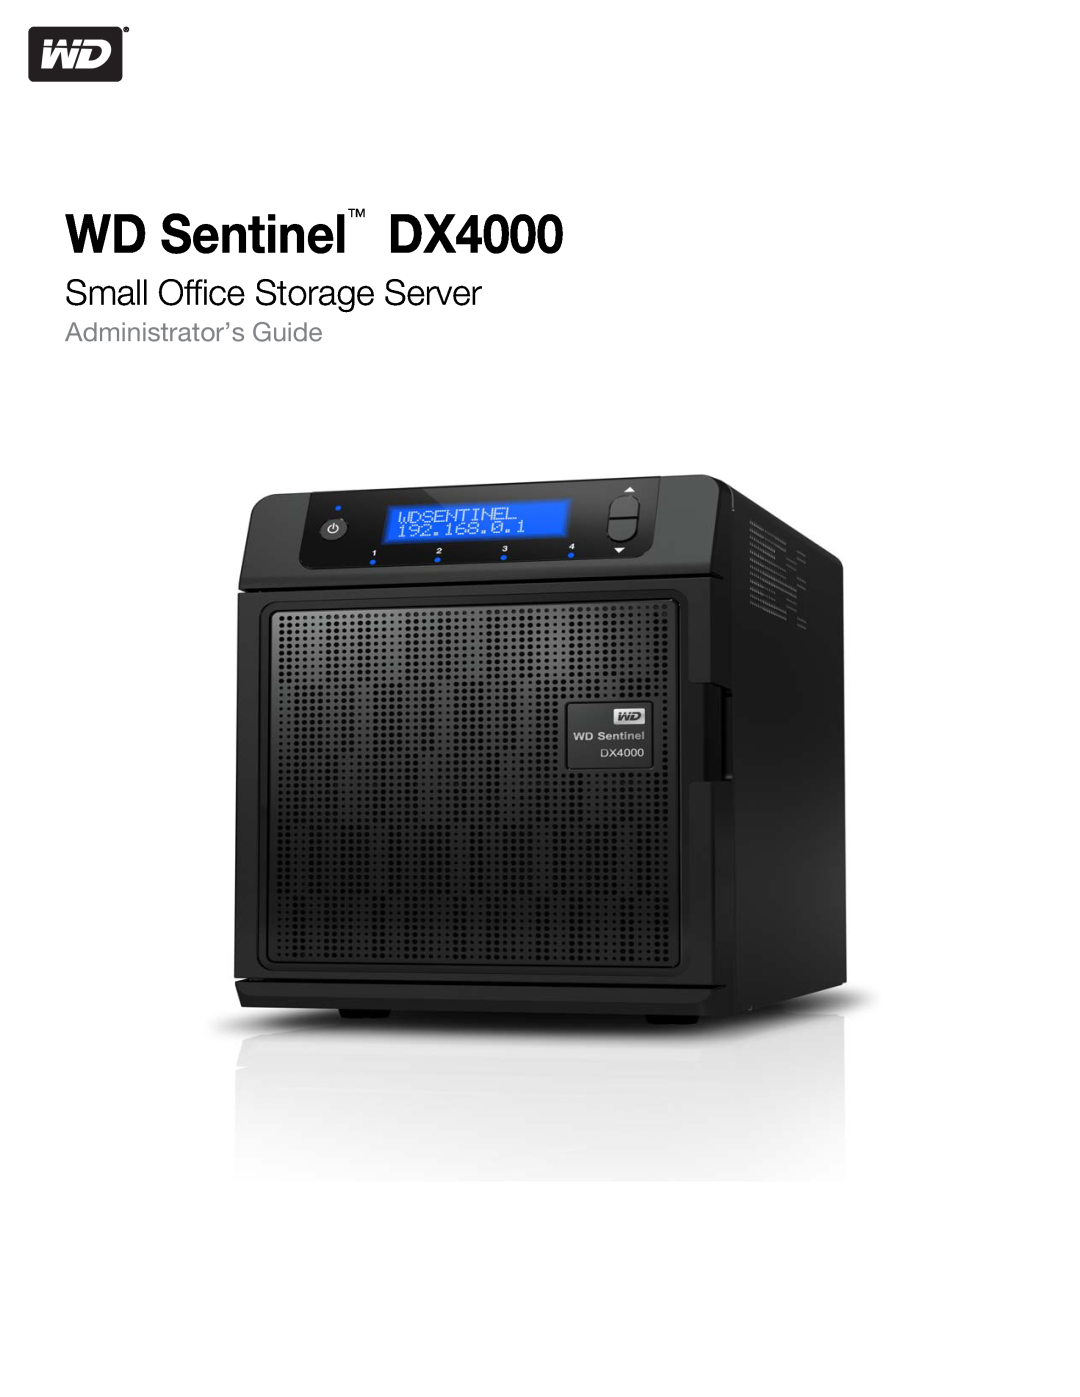 Western Digital WDBLGT0160KBK, WDBLGT0120KBK manual Small Office Storage Server, WD Sentinel DX4000, Administrator’s Guide 